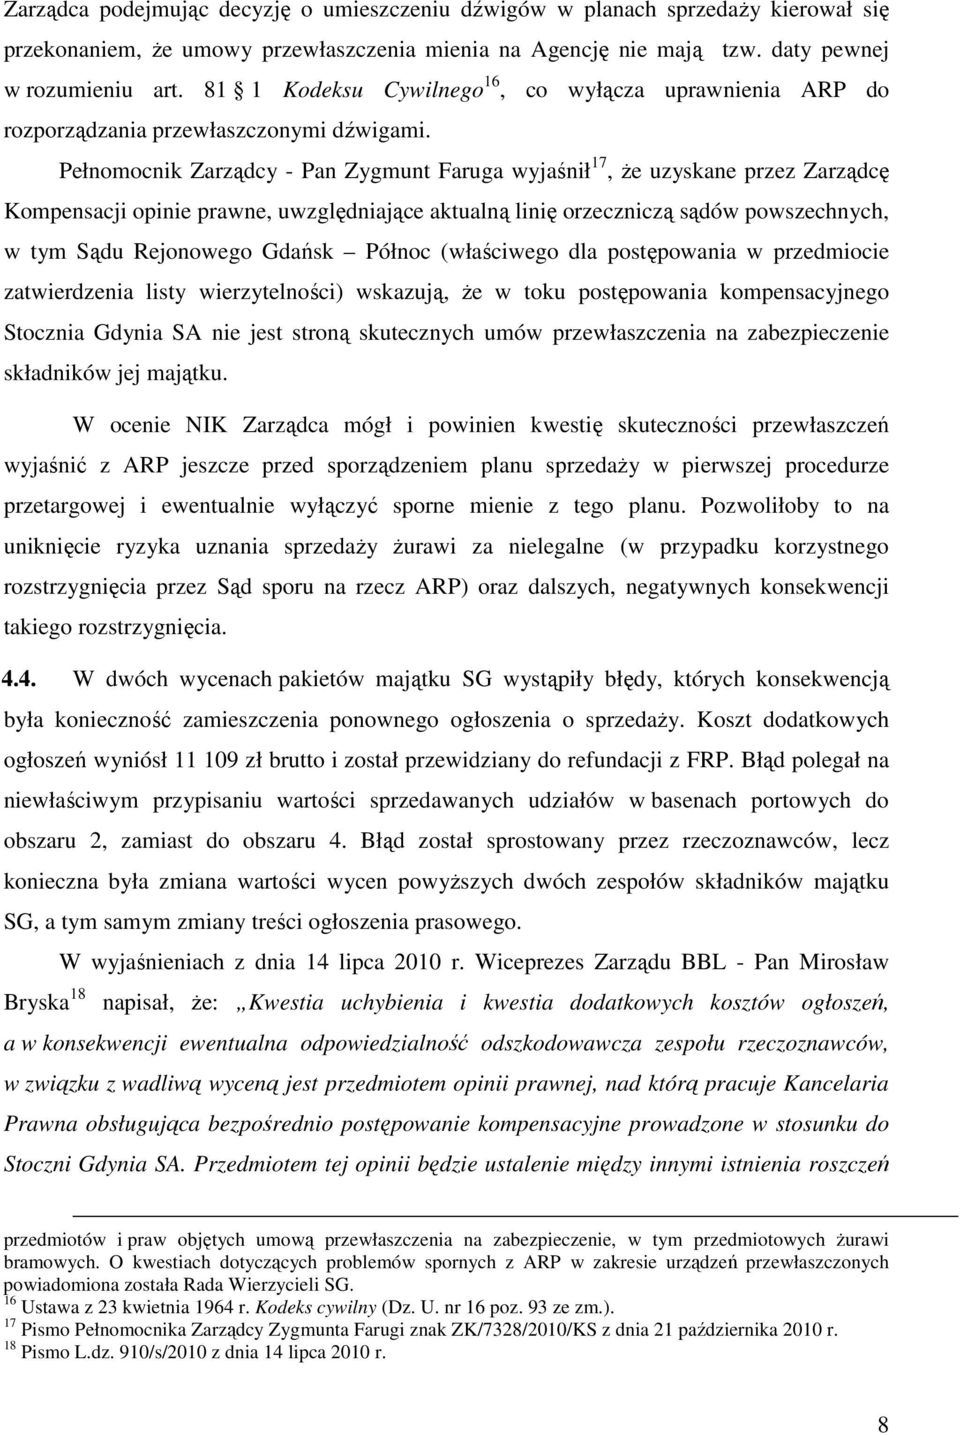 Pełnomocnik Zarządcy - Pan Zygmunt Faruga wyjaśnił 17, że uzyskane przez Zarządcę Kompensacji opinie prawne, uwzględniające aktualną linię orzeczniczą sądów powszechnych, w tym Sądu Rejonowego Gdańsk